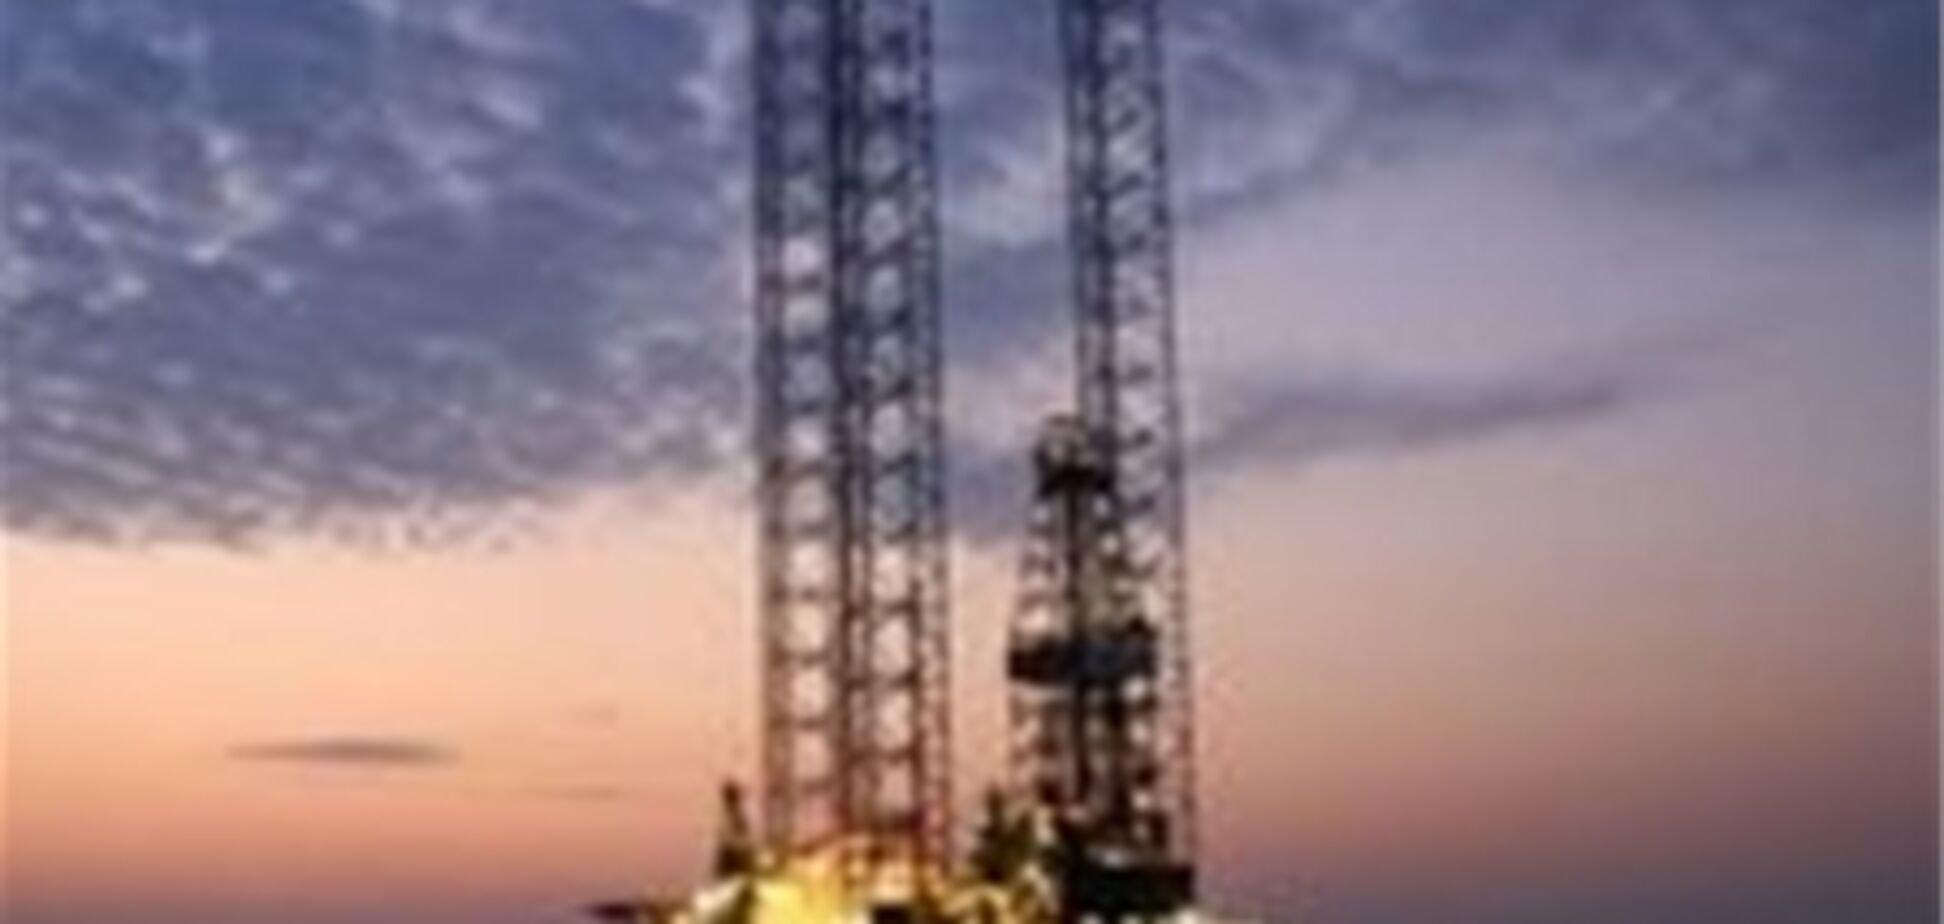 Украина выйдет на первое место по объему добычи газа в акватории Черного моря - Бойко